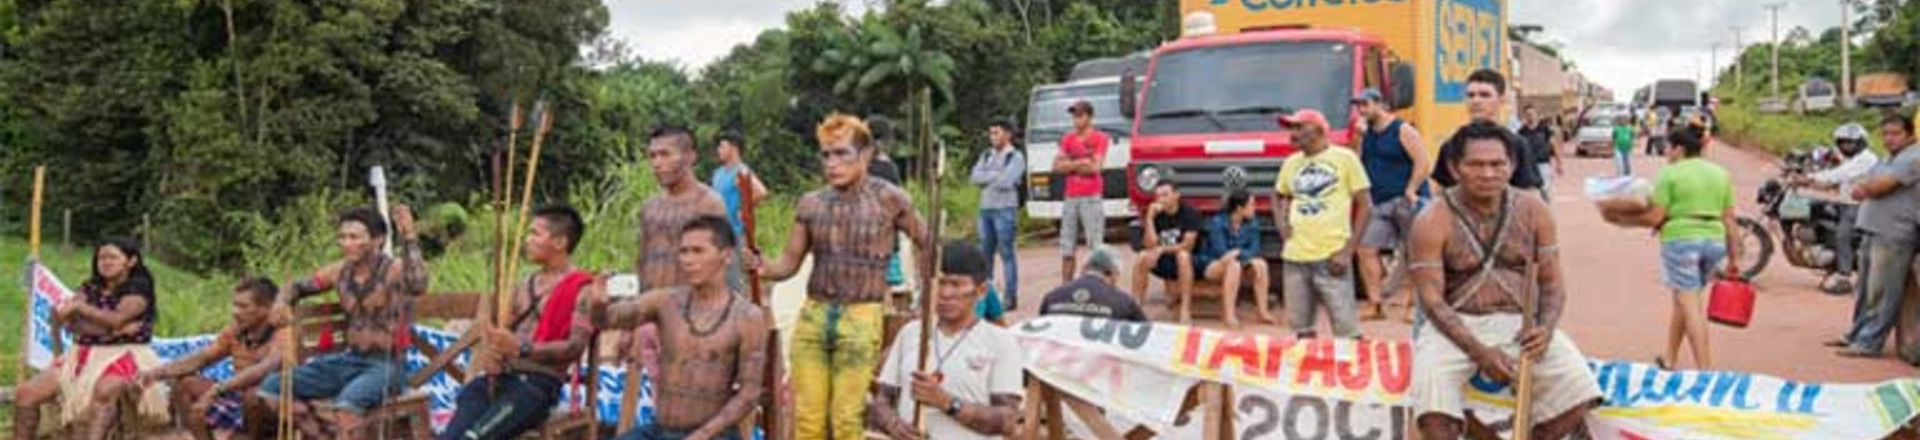 Munduruku interditam a Transamazônica para protestar contra a inépcia do governo brasileiro em demarcar terras indígenas. 